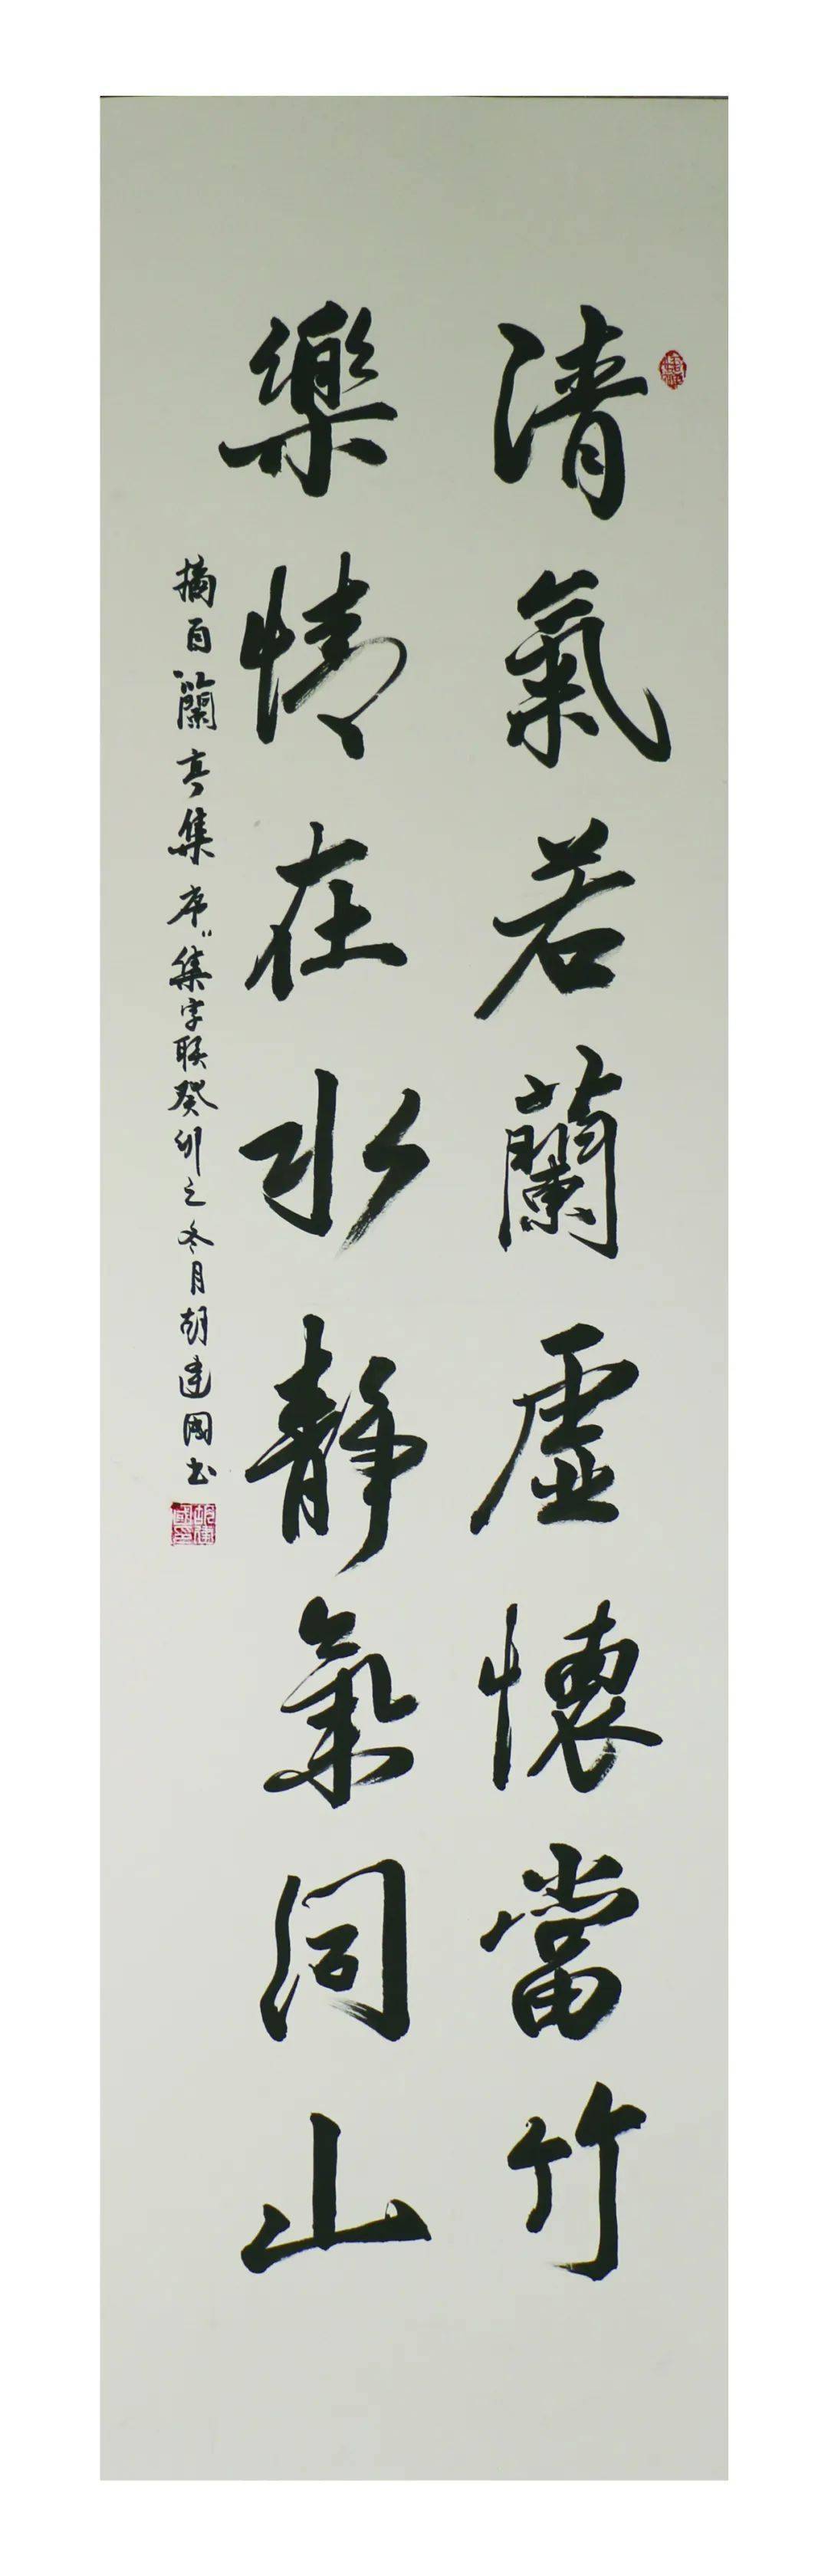 千阳县第十届联墨合璧 辞旧迎新楹联书法作品线上展览